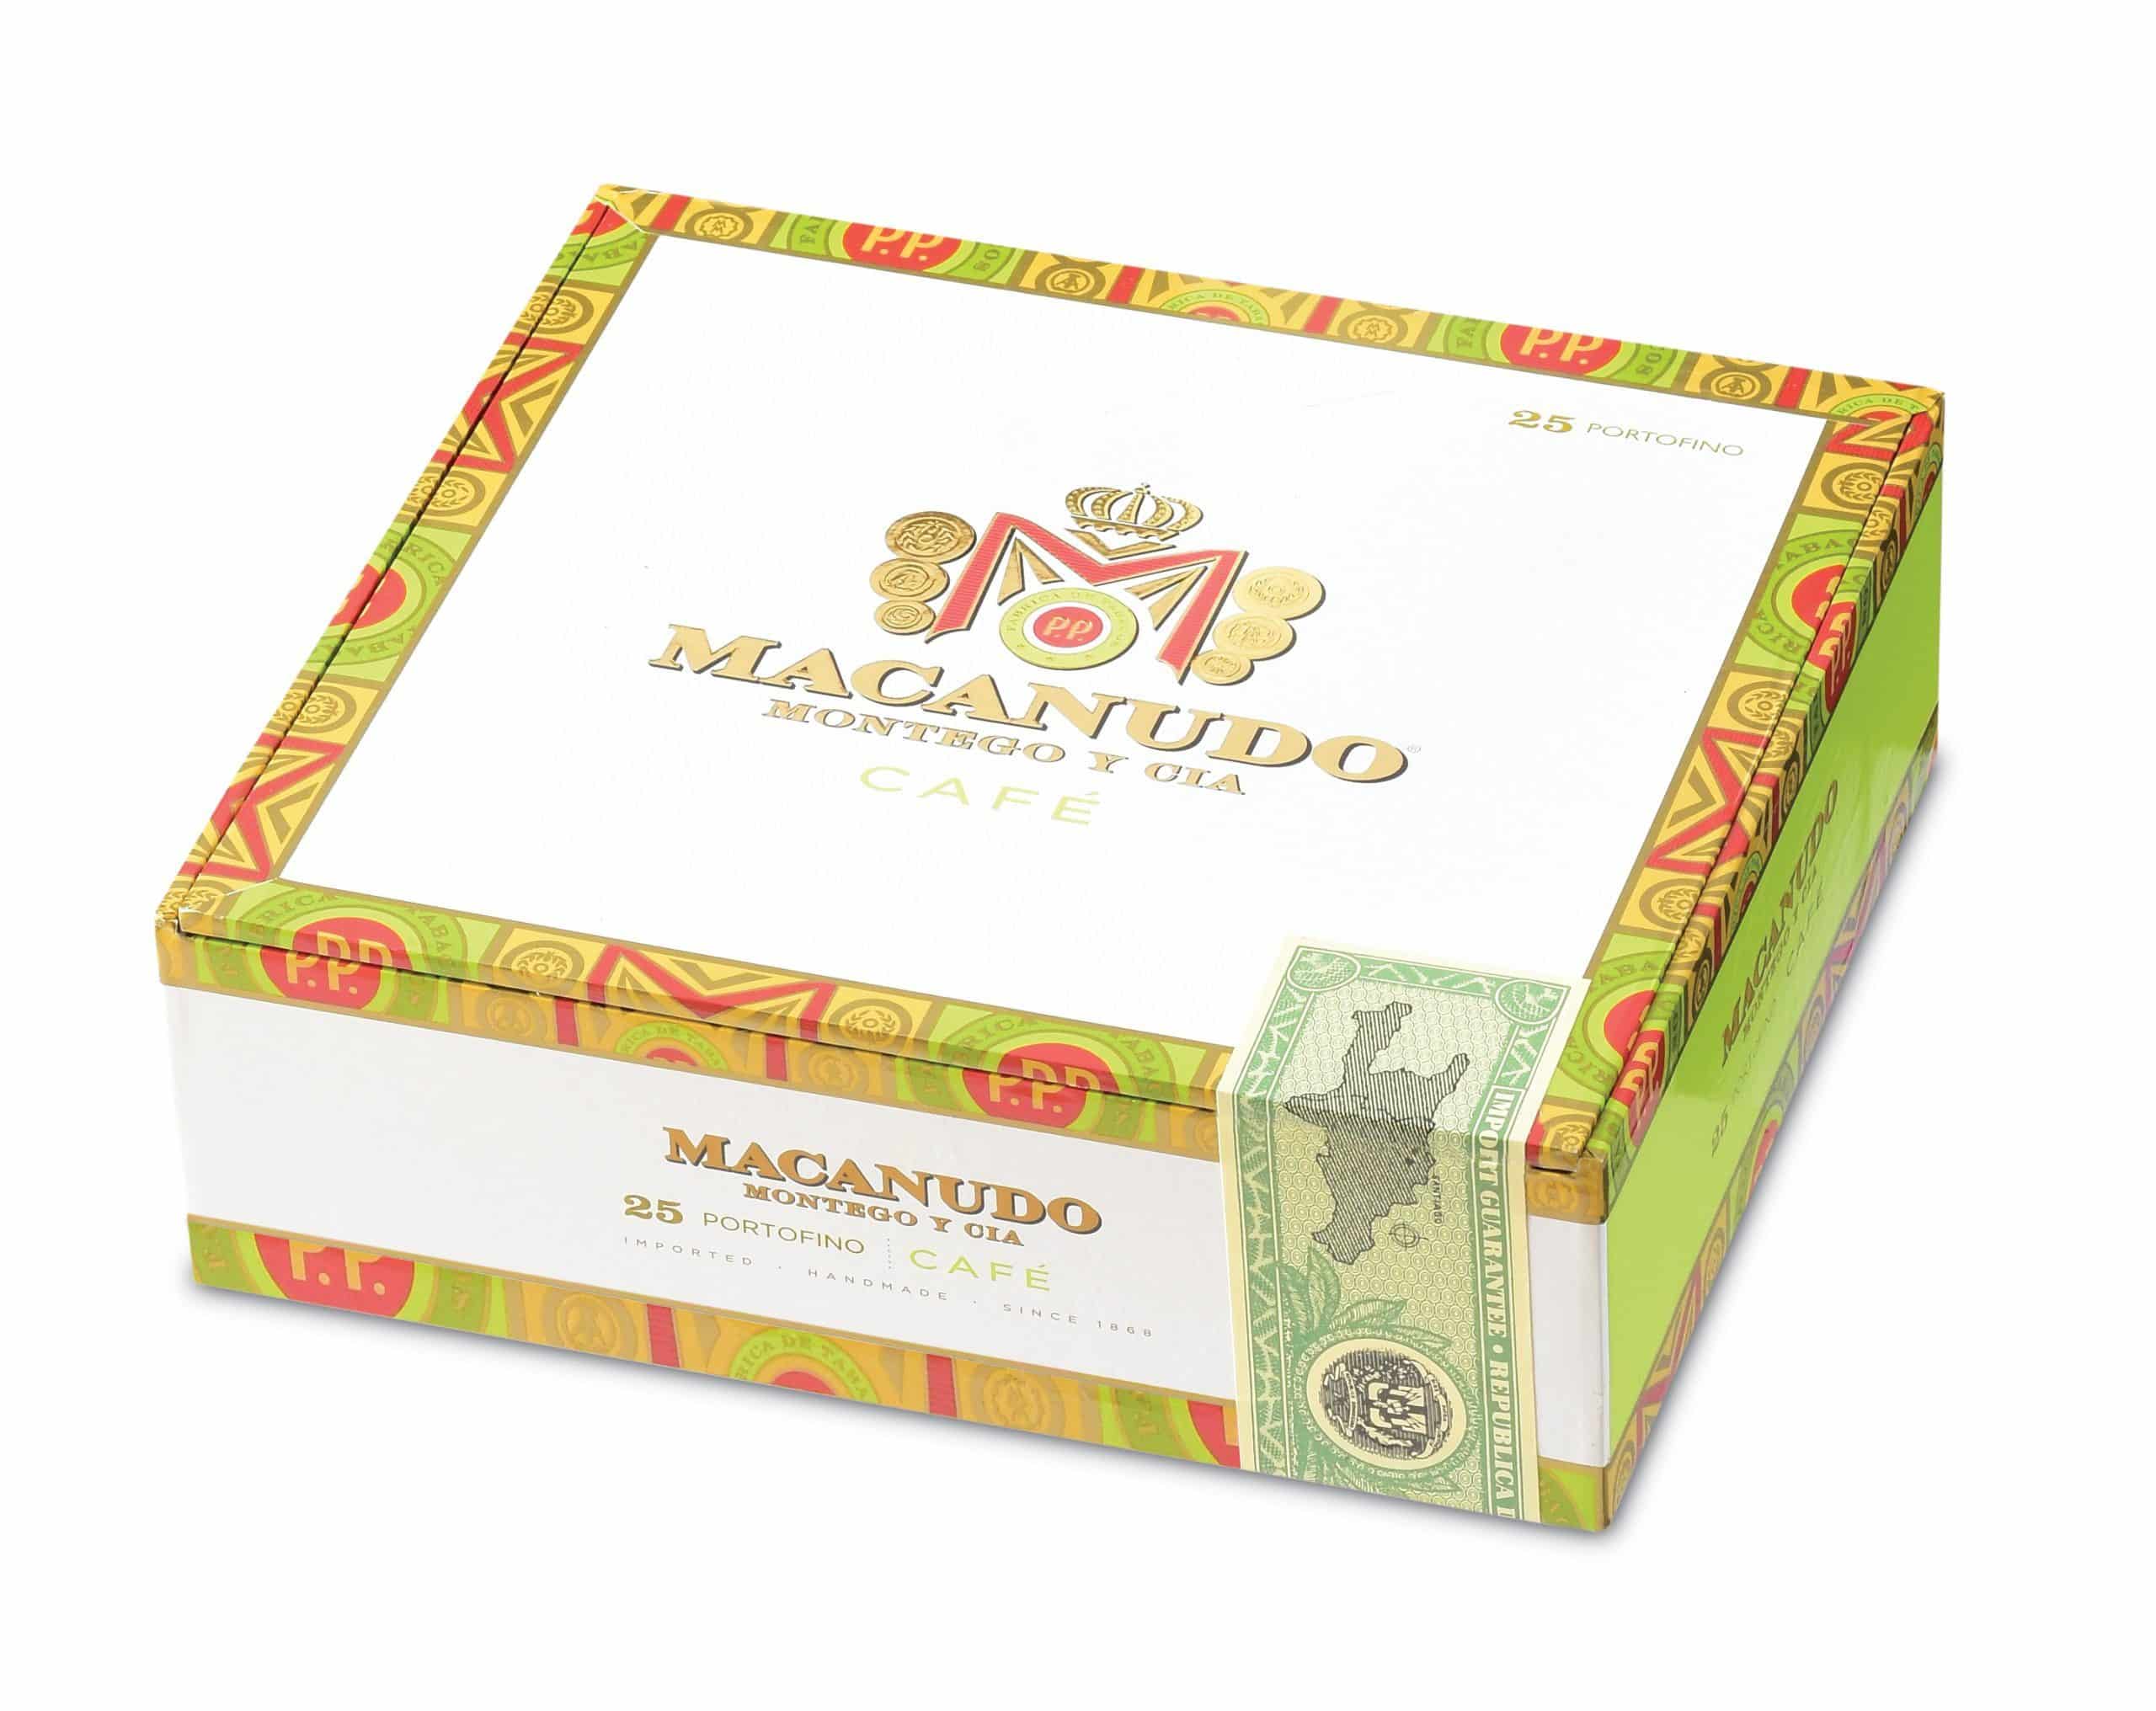 macanudo cafe portofino box closed